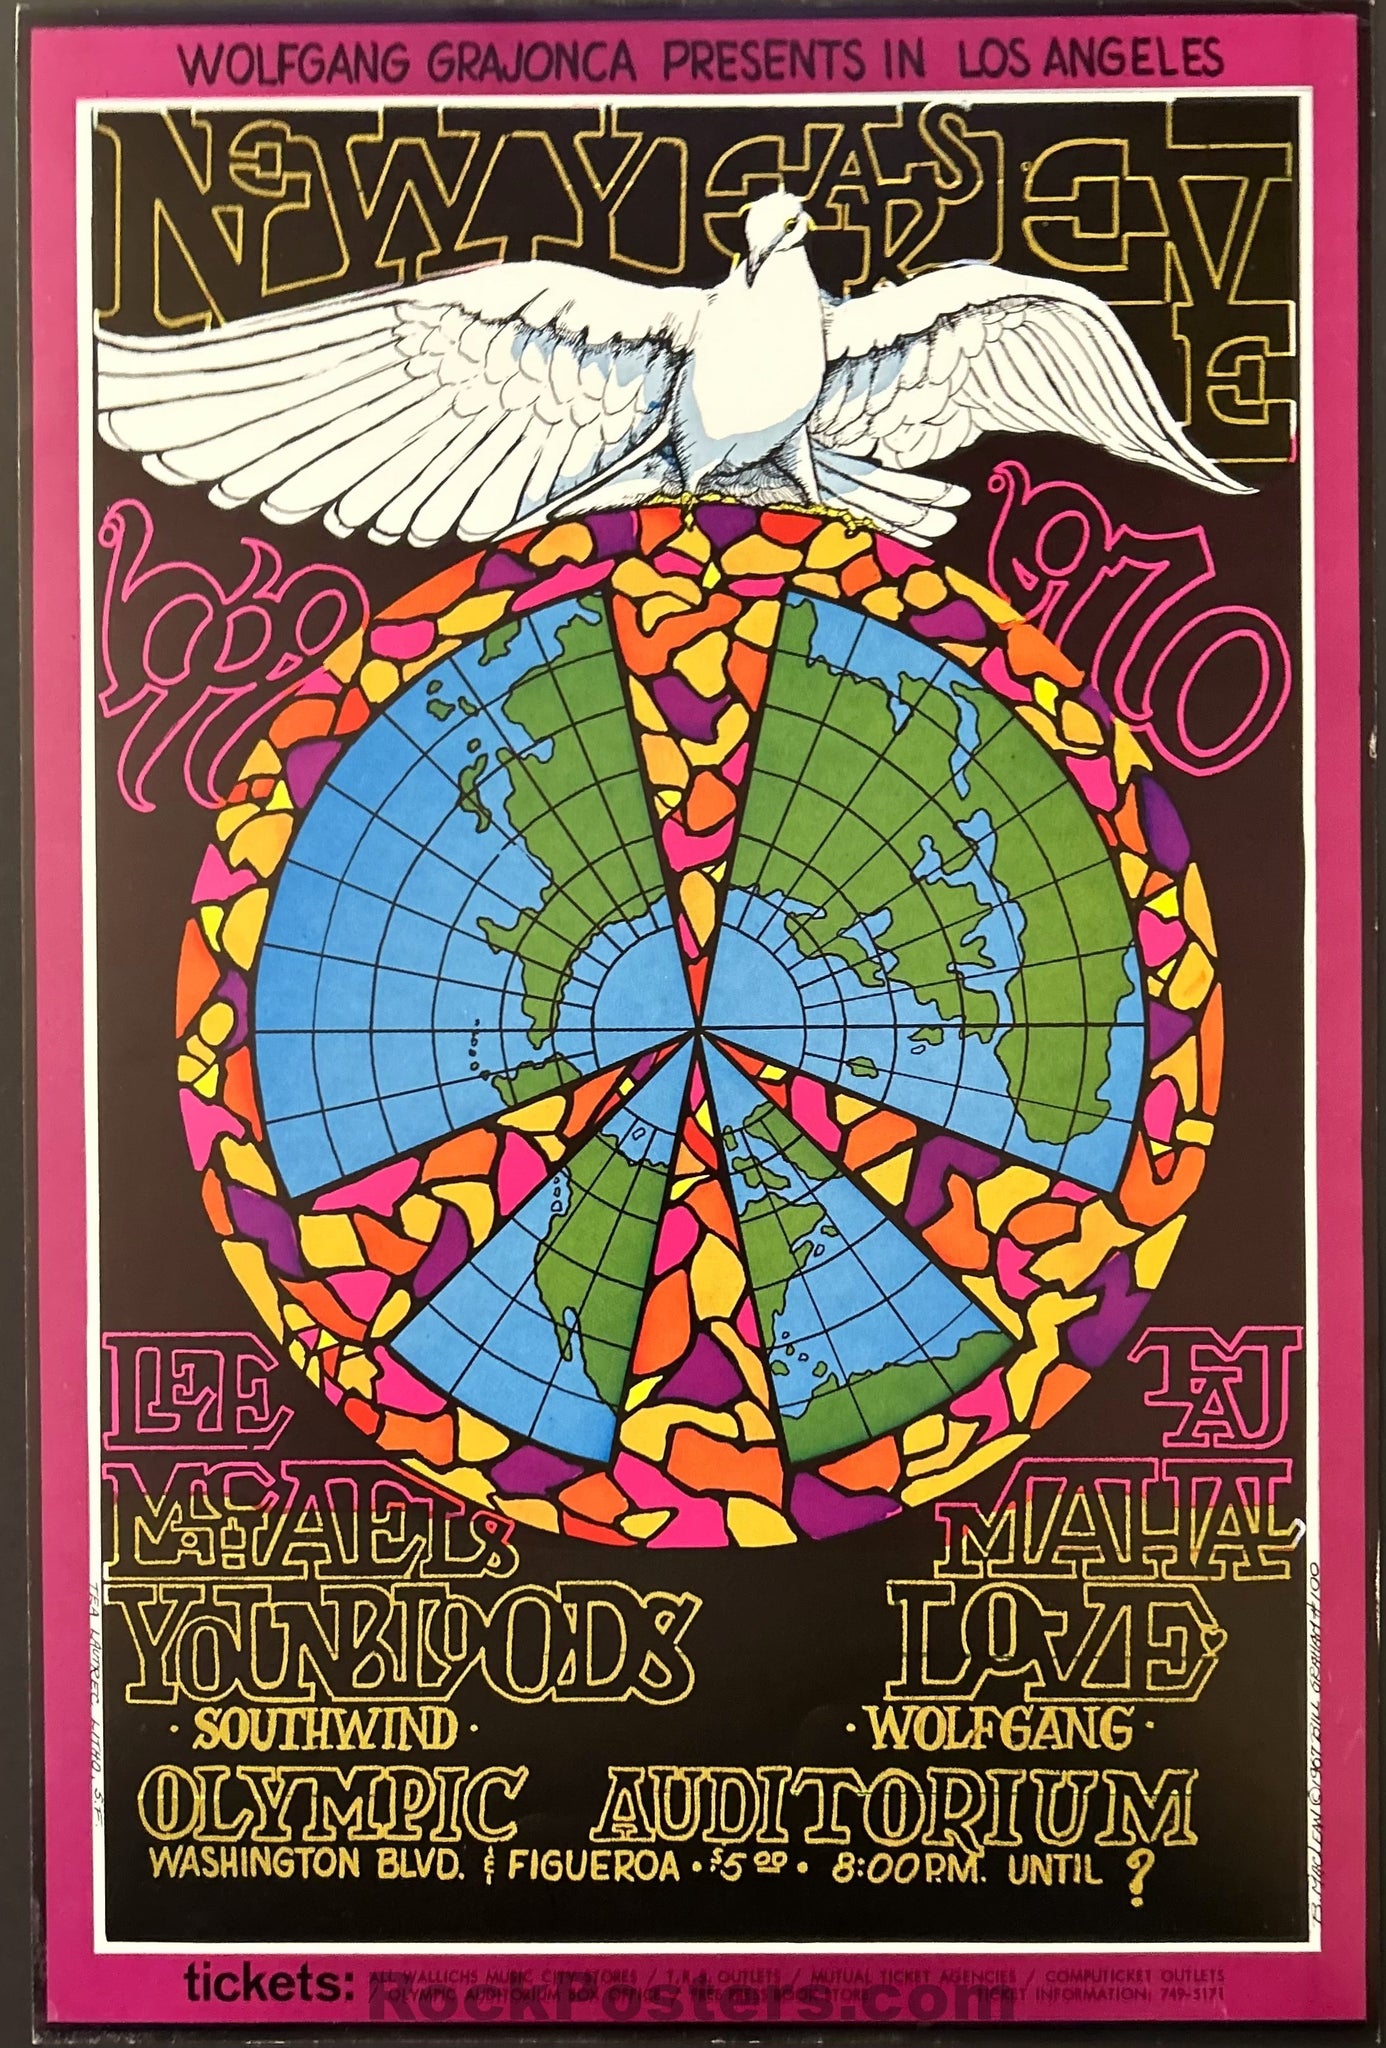 AUCTION - BG-100A - Love/Youngbloods - Bonnie MacLean - Original 1969 Poster - Los Angeles - Excellent